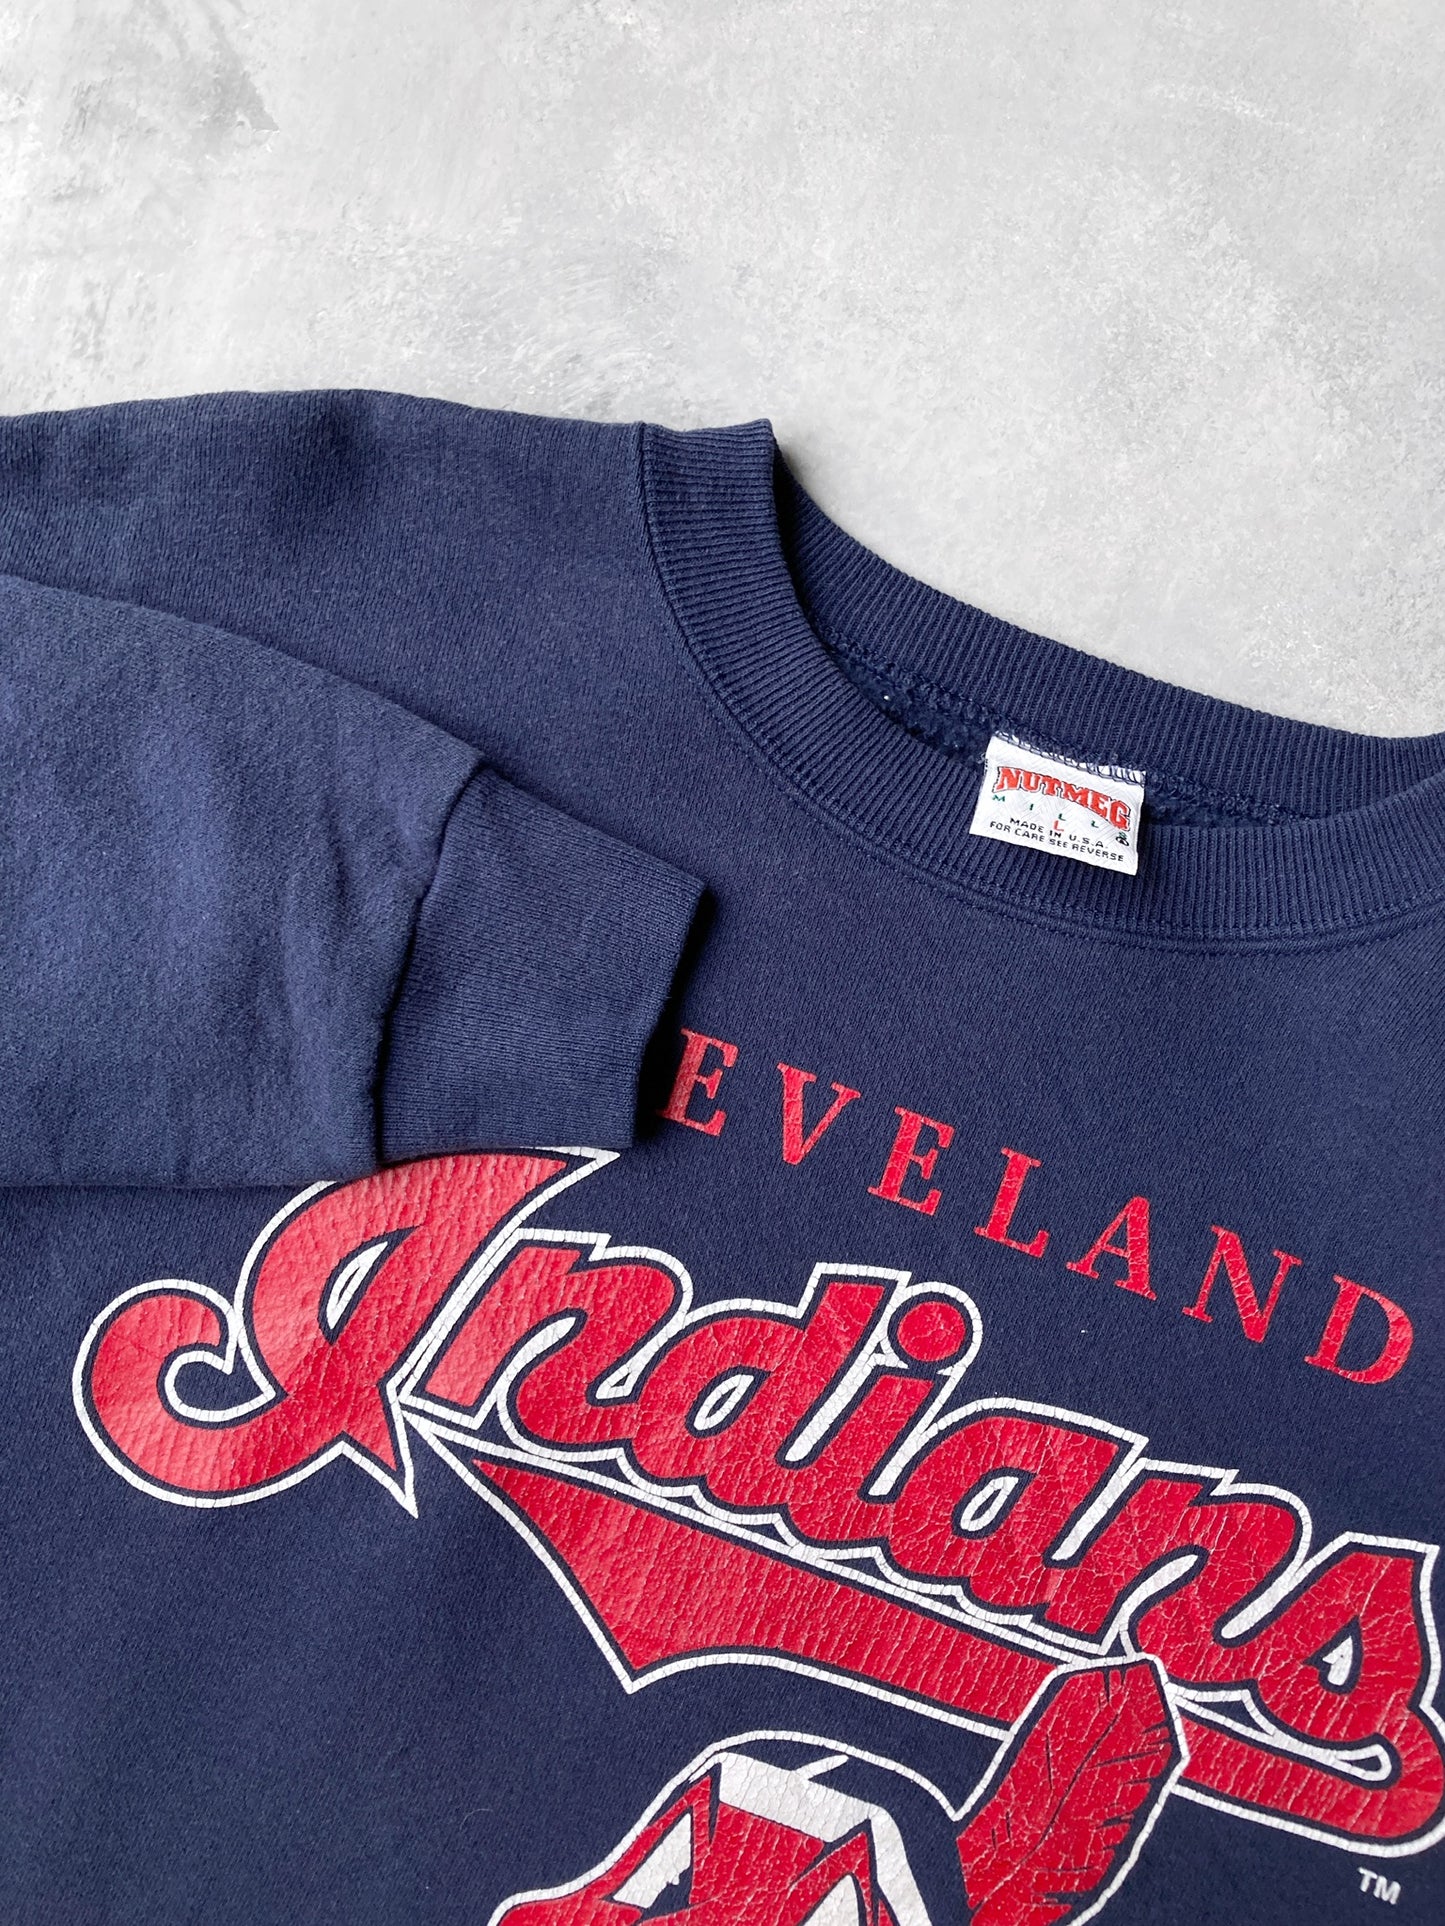 Cleveland Indians Sweatshirt '93 - Large